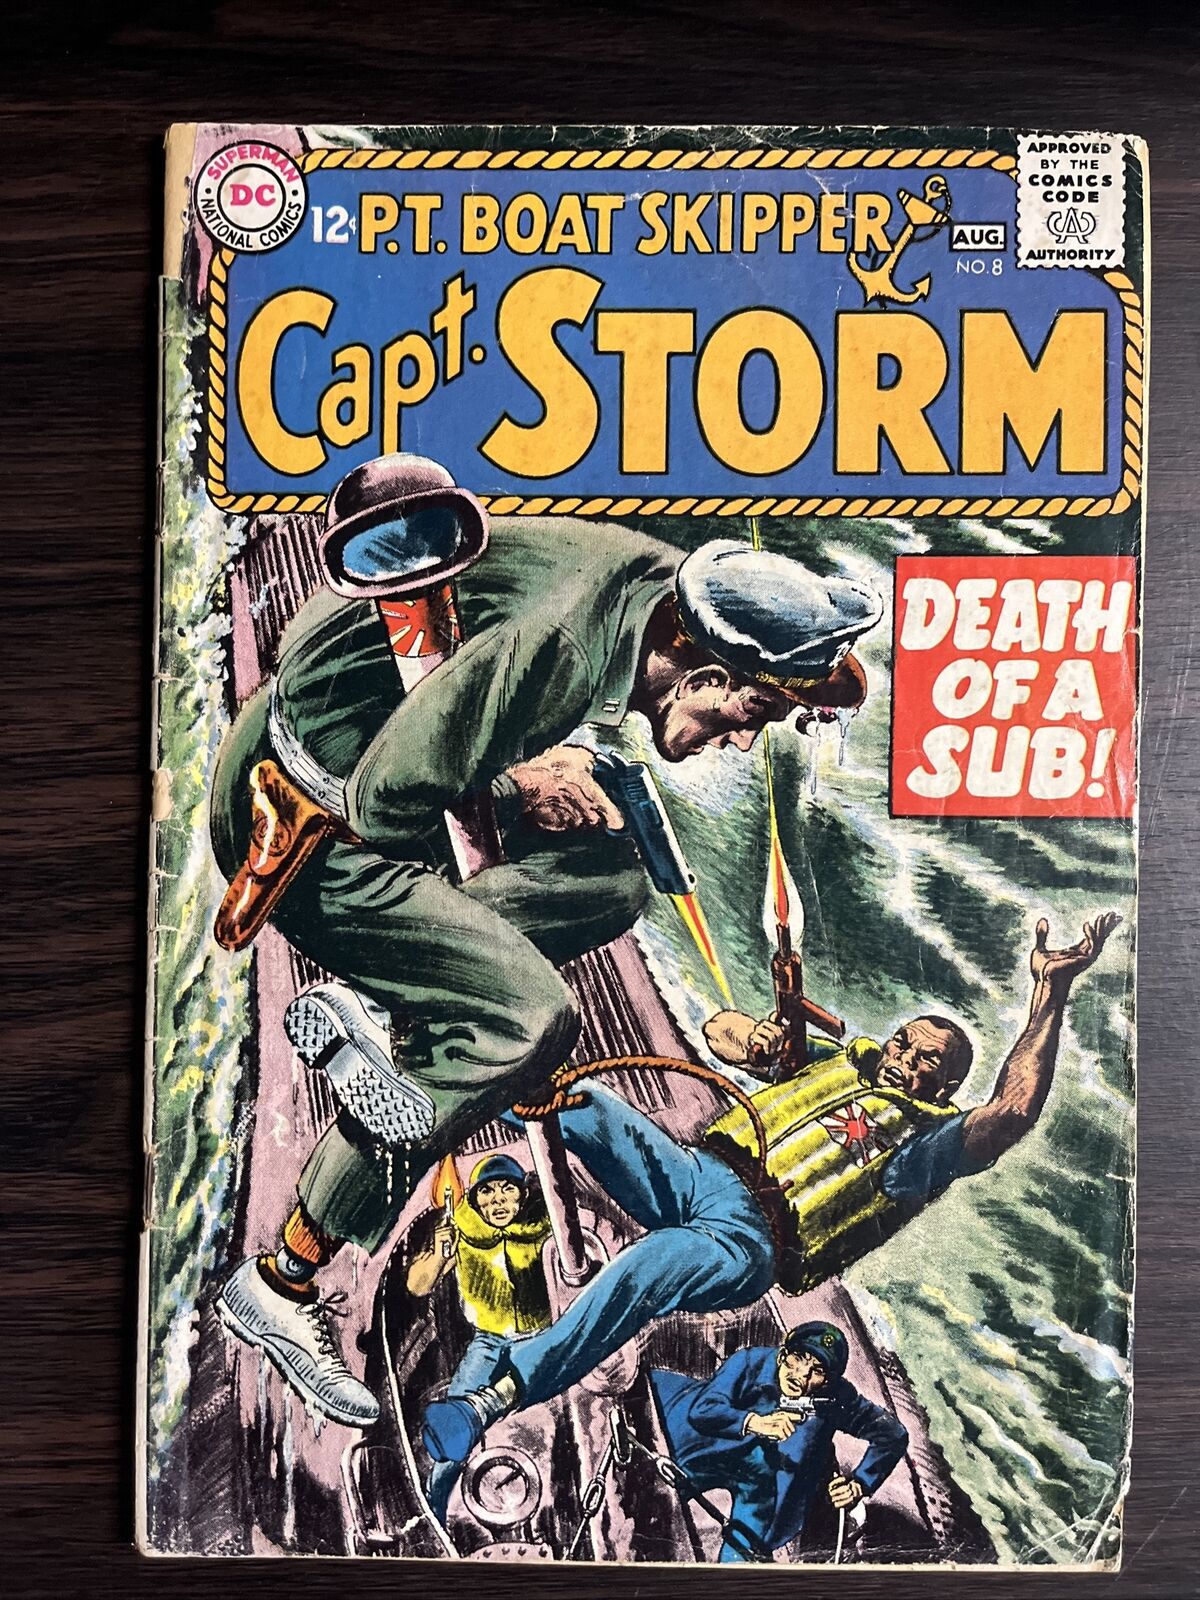 P.T. Boat Skipper Capt. Storm #8 DC Comics Aug. 1965